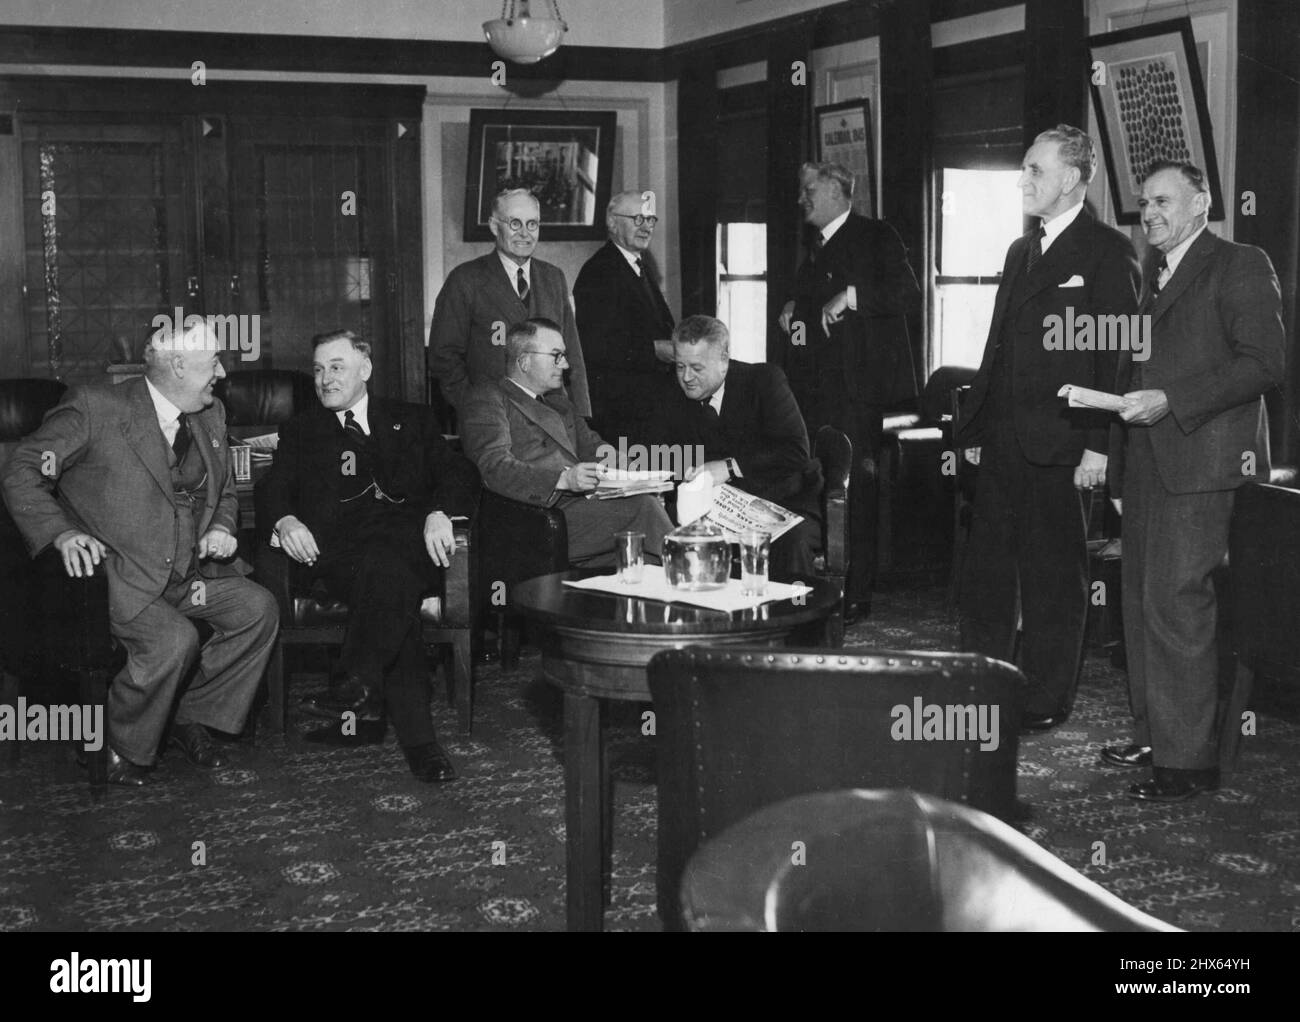 Der komfortabelste Partyraum im Haus gehört den Labour-Senatoren von links, Senatoren A. Finlay, T.M. Nicholla, Istanbul Amour, J.J. Arnold, South West O'Flaherty, R.E. Clothier (Govt.Whip), G. Brown, D.M. Grant, B. Courtice (Vorsitzender der Ausschüsse). 18. Januar 1950. Stockfoto